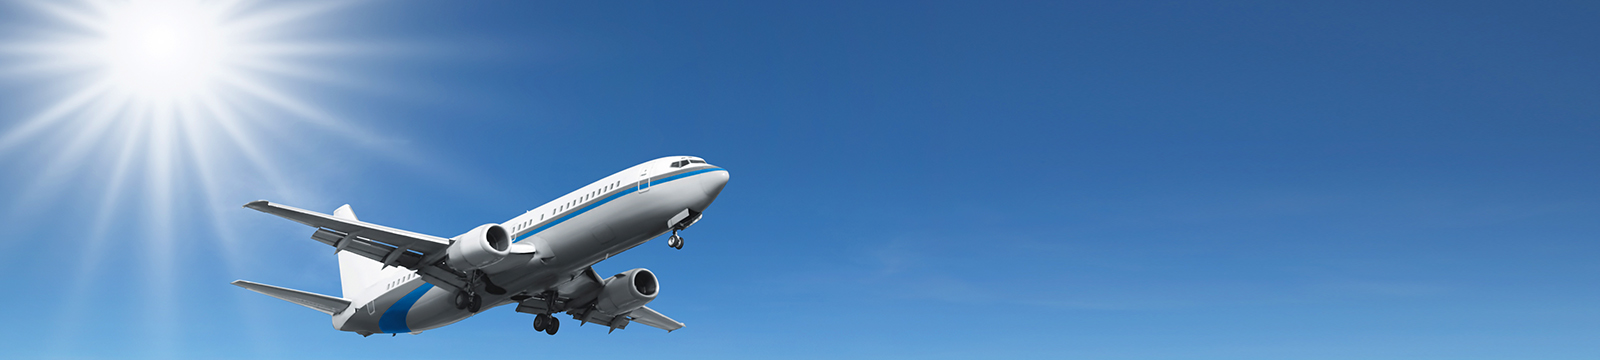 祥鹏航空货运公司承接航空货运、航空托运、宠物空运、上门取货、到达送货等快件业务